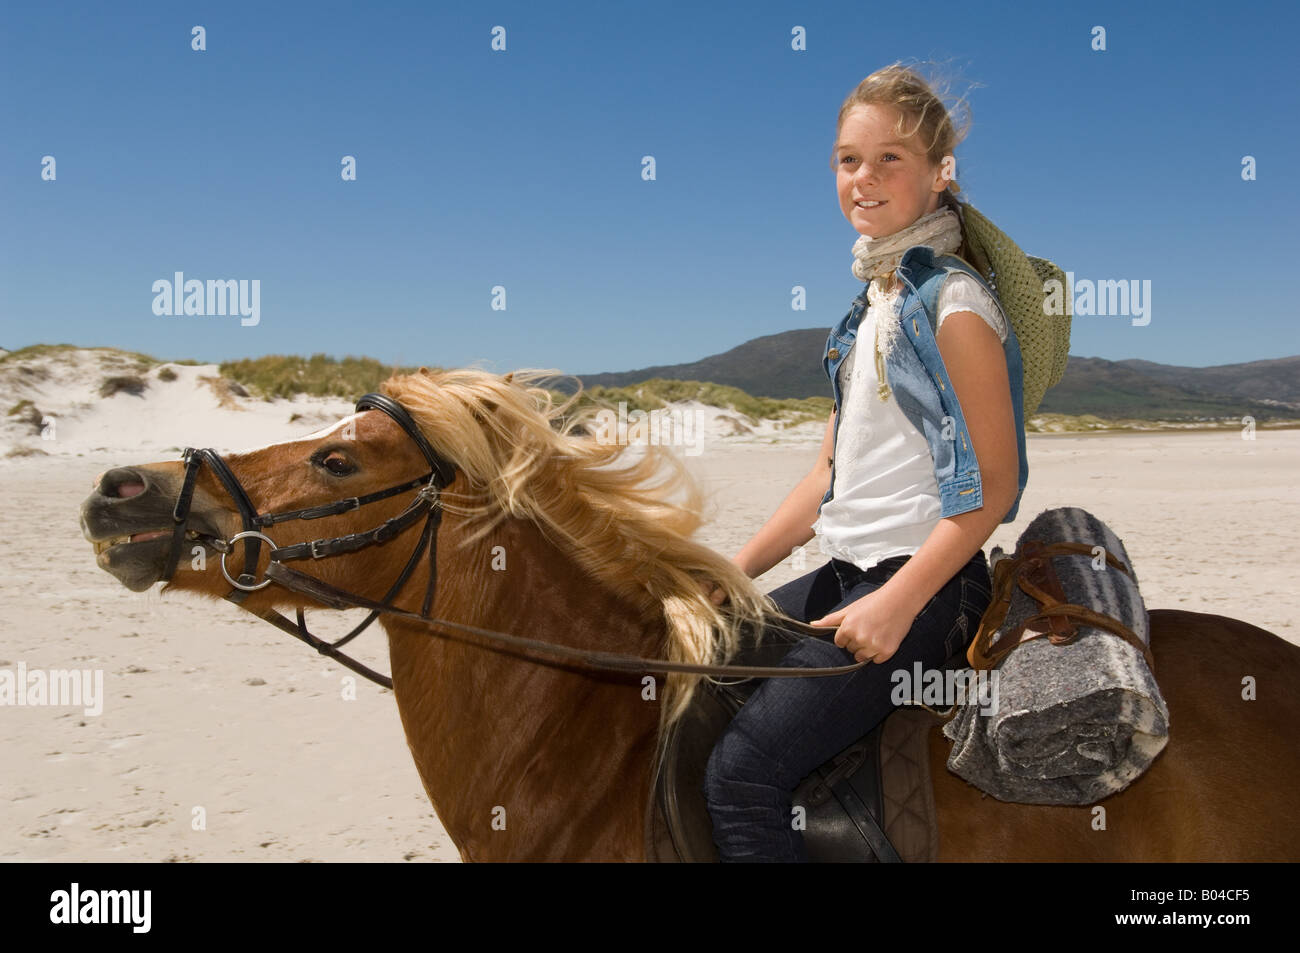 A girl riding a horse Stock Photo